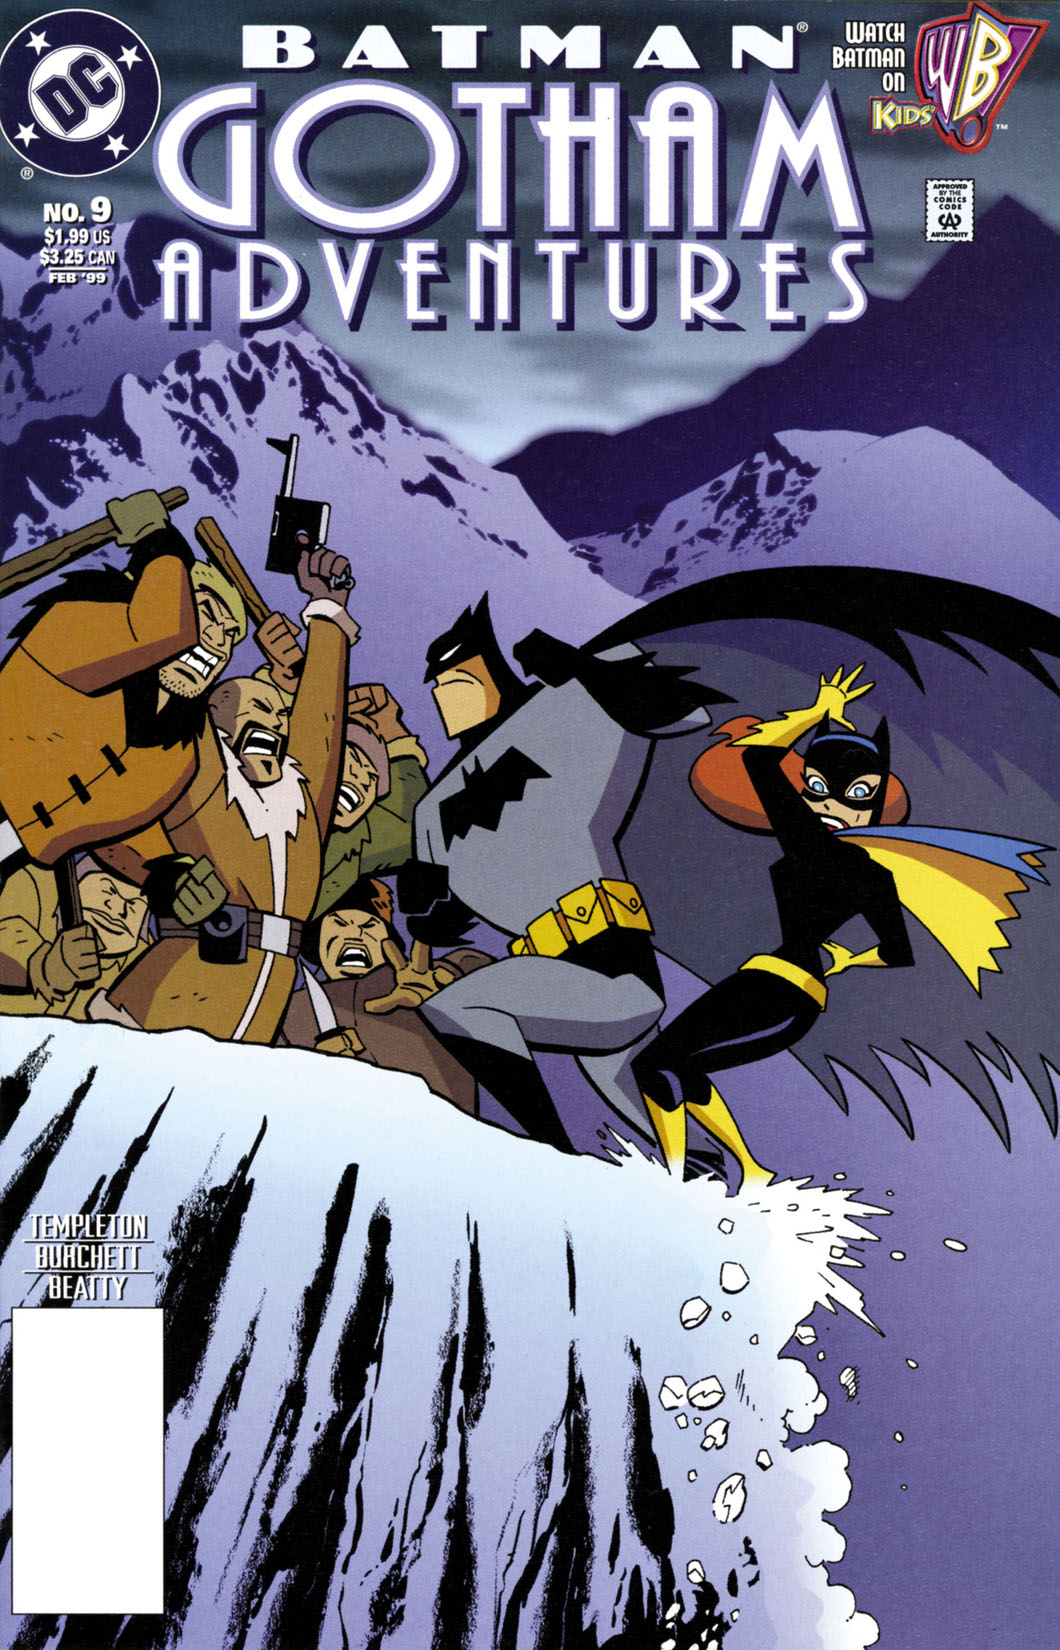 Batman: Gotham Adventures #9 preview images